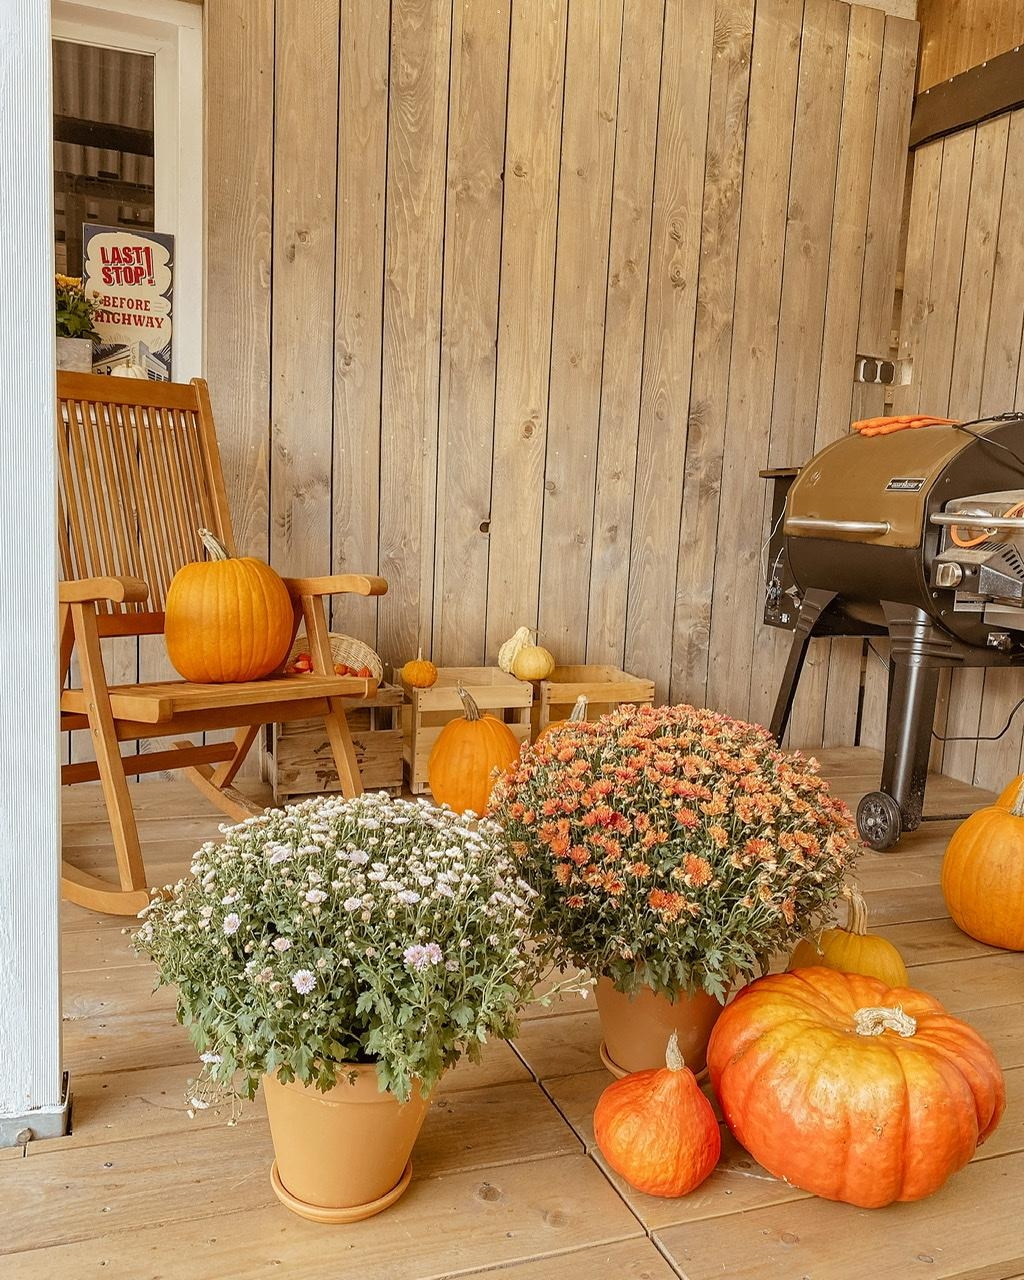 Der Herbst kommt! 
Zumindest auf unserer neuen DIY Veranda. 

#veranda #outdoorliving #herbstdeko